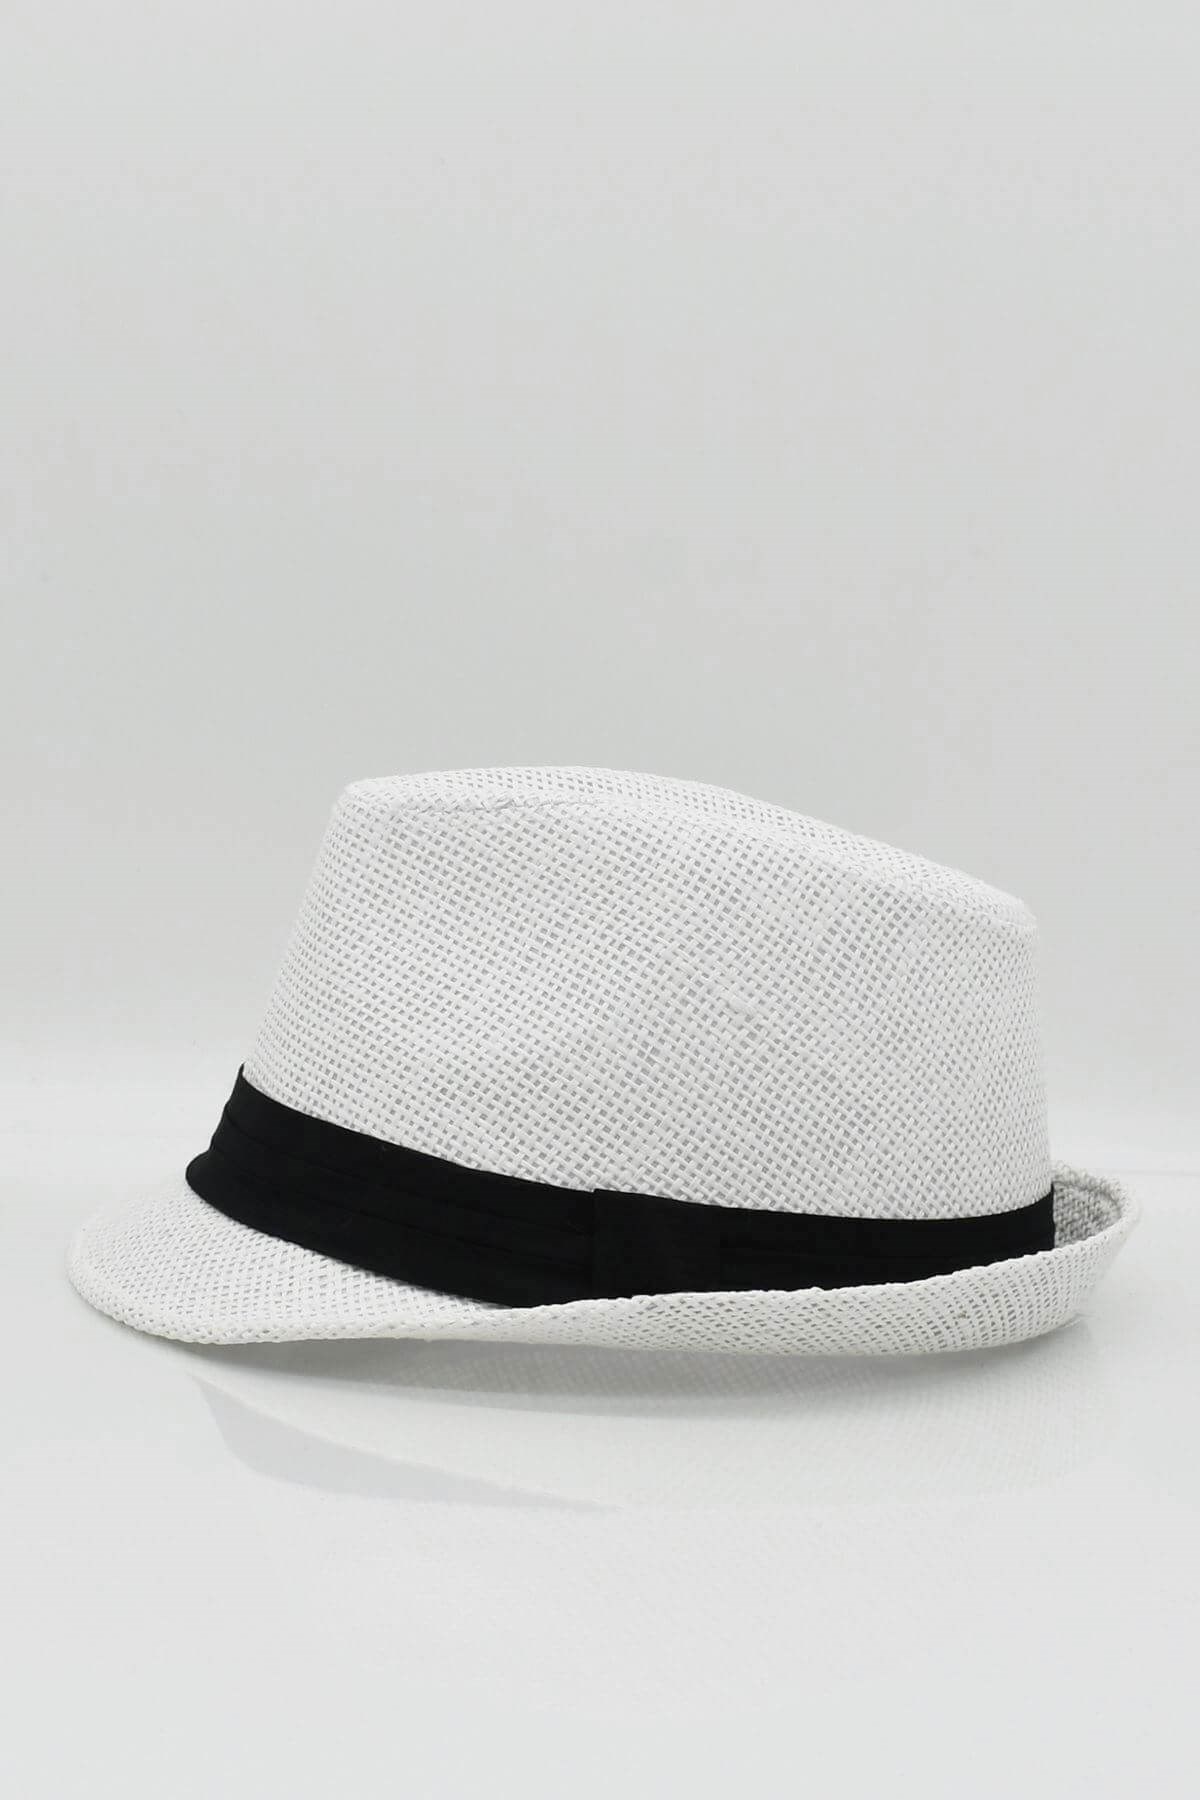 Külah Erkek Fötr Hasır Şapka Yazlık Şapka - Beyaz KLH0773